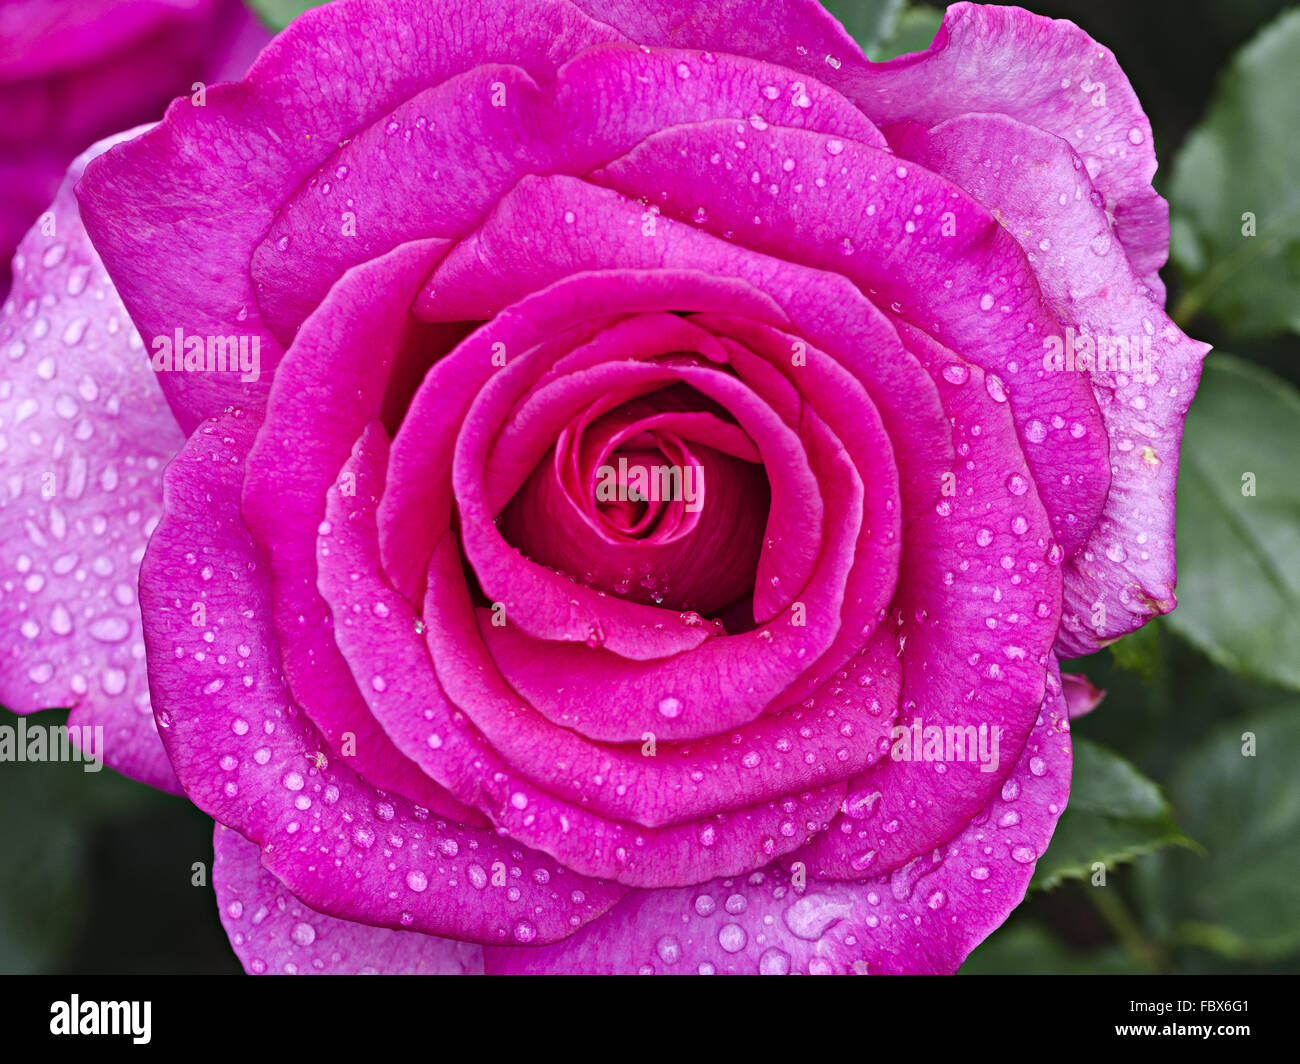 blossom of a rose Parole Stock Photo